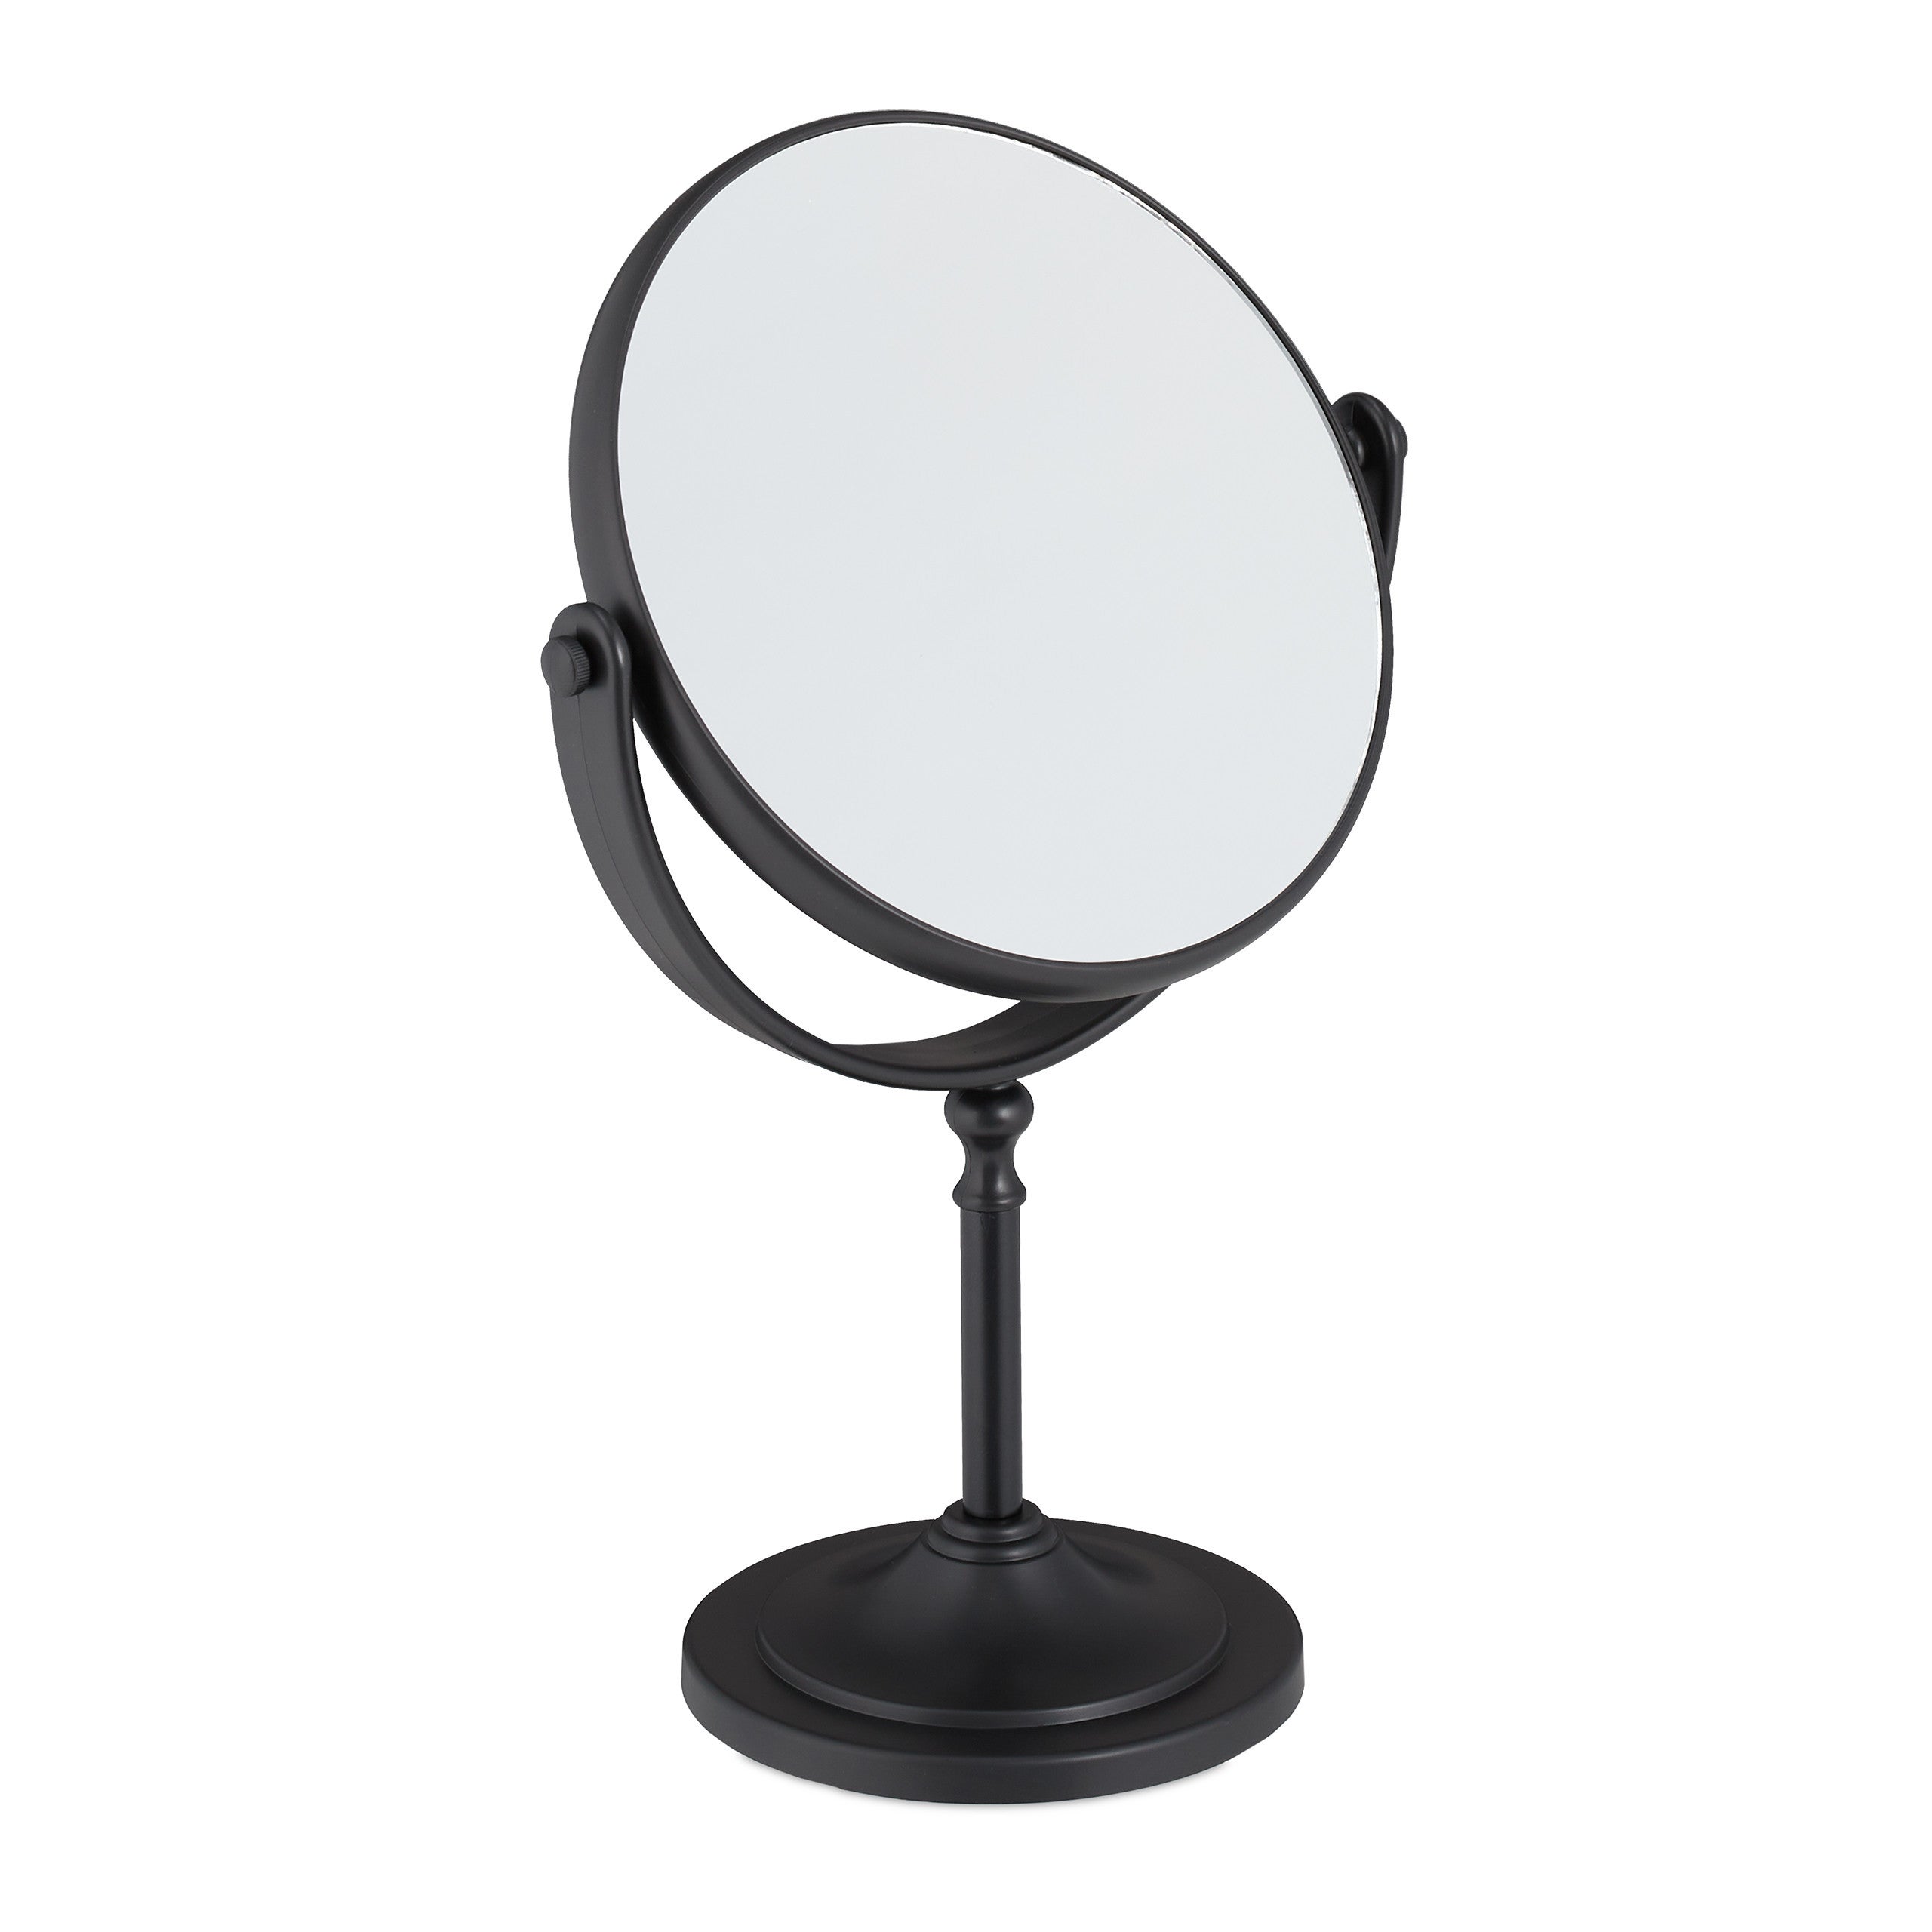 EmNarsissus Specchio da Trucco in Metallo Specchio da Trucco per Bagno Camera da Letto Specchio Rotante da Tavolo 1 2 Funzione di ingrandimento Specchio per Il Trucco 